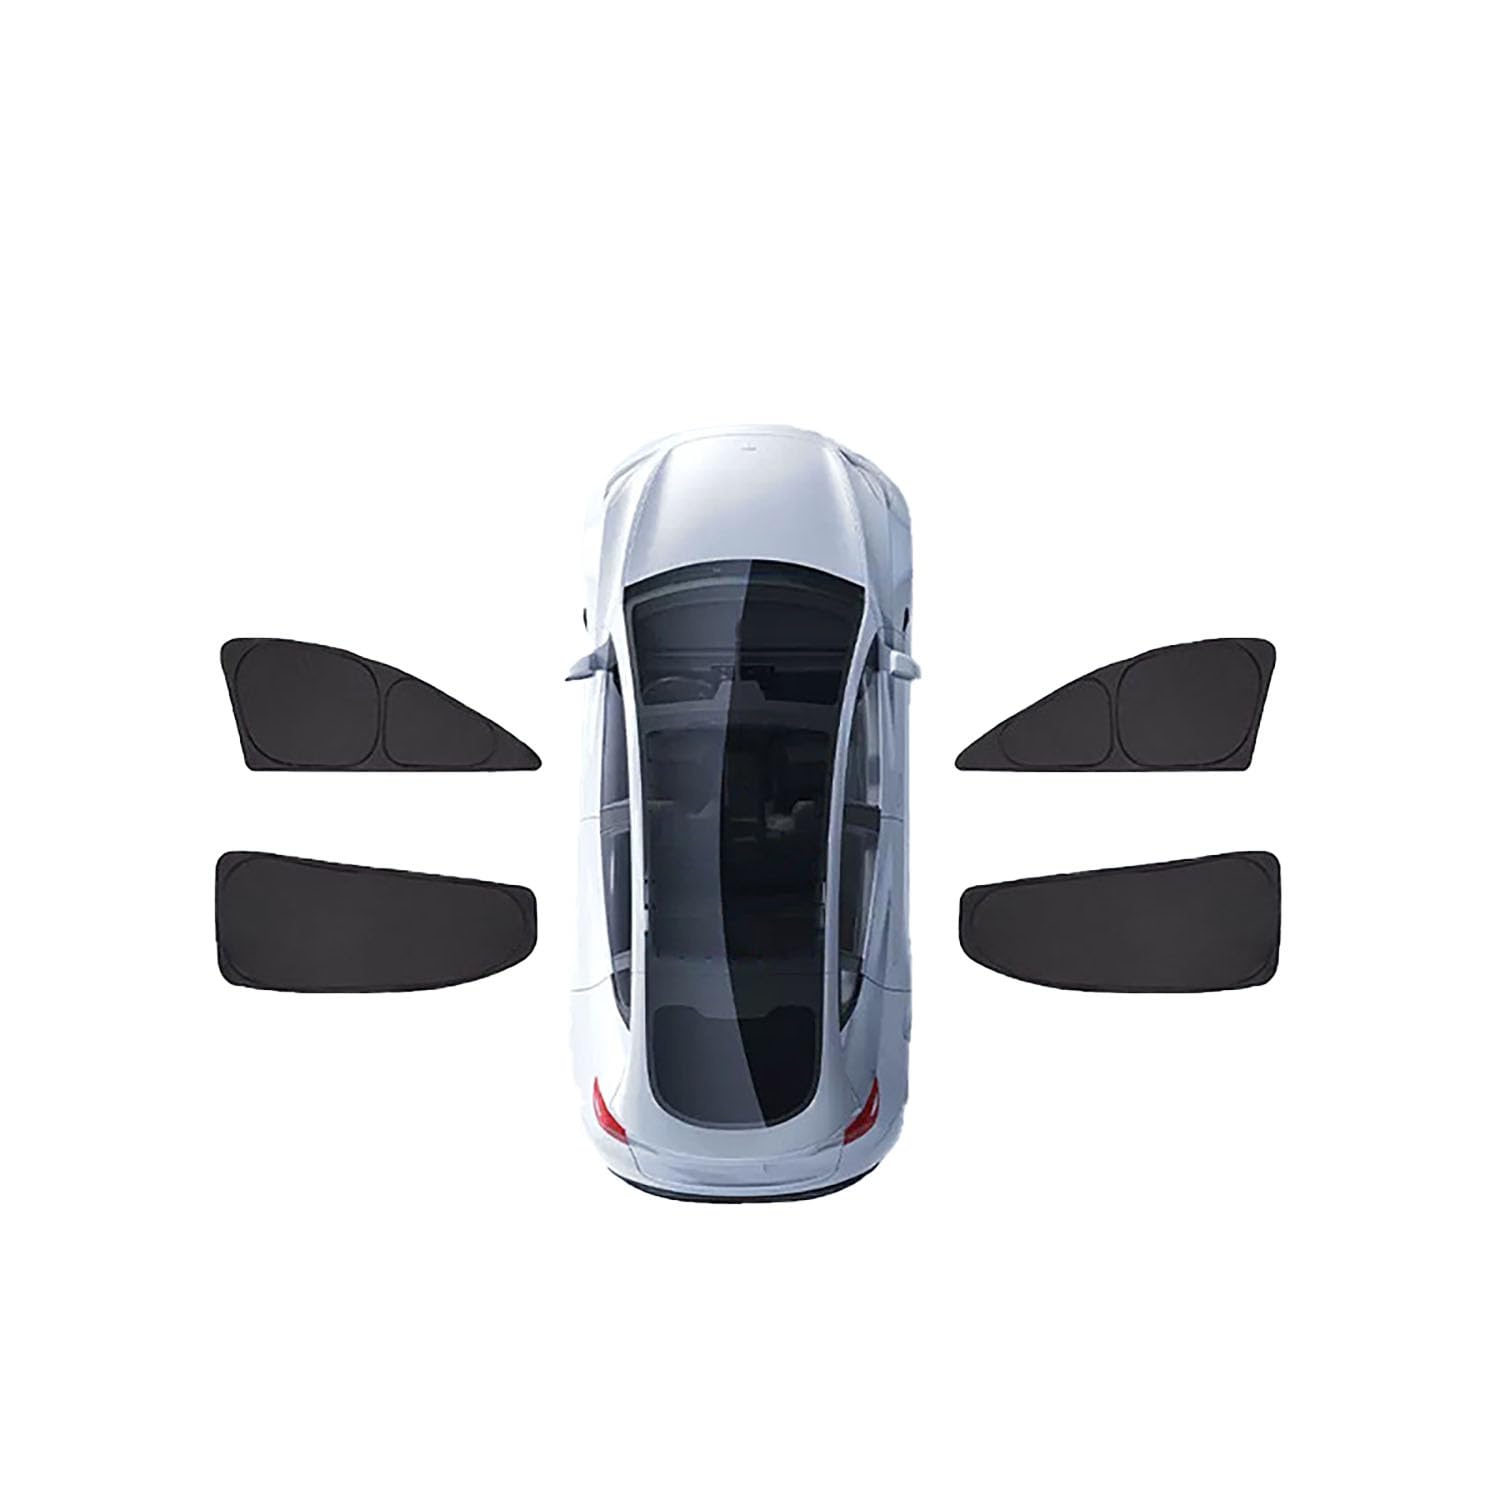 Auto-Sonnenschutz für VW Tiguan Before-2016,Auto-Sonnenschutz UV-Schutz Wärmeisoliert Schutz der Privatsphäre ZubehöR,C-4 side windows von LeiBaOF